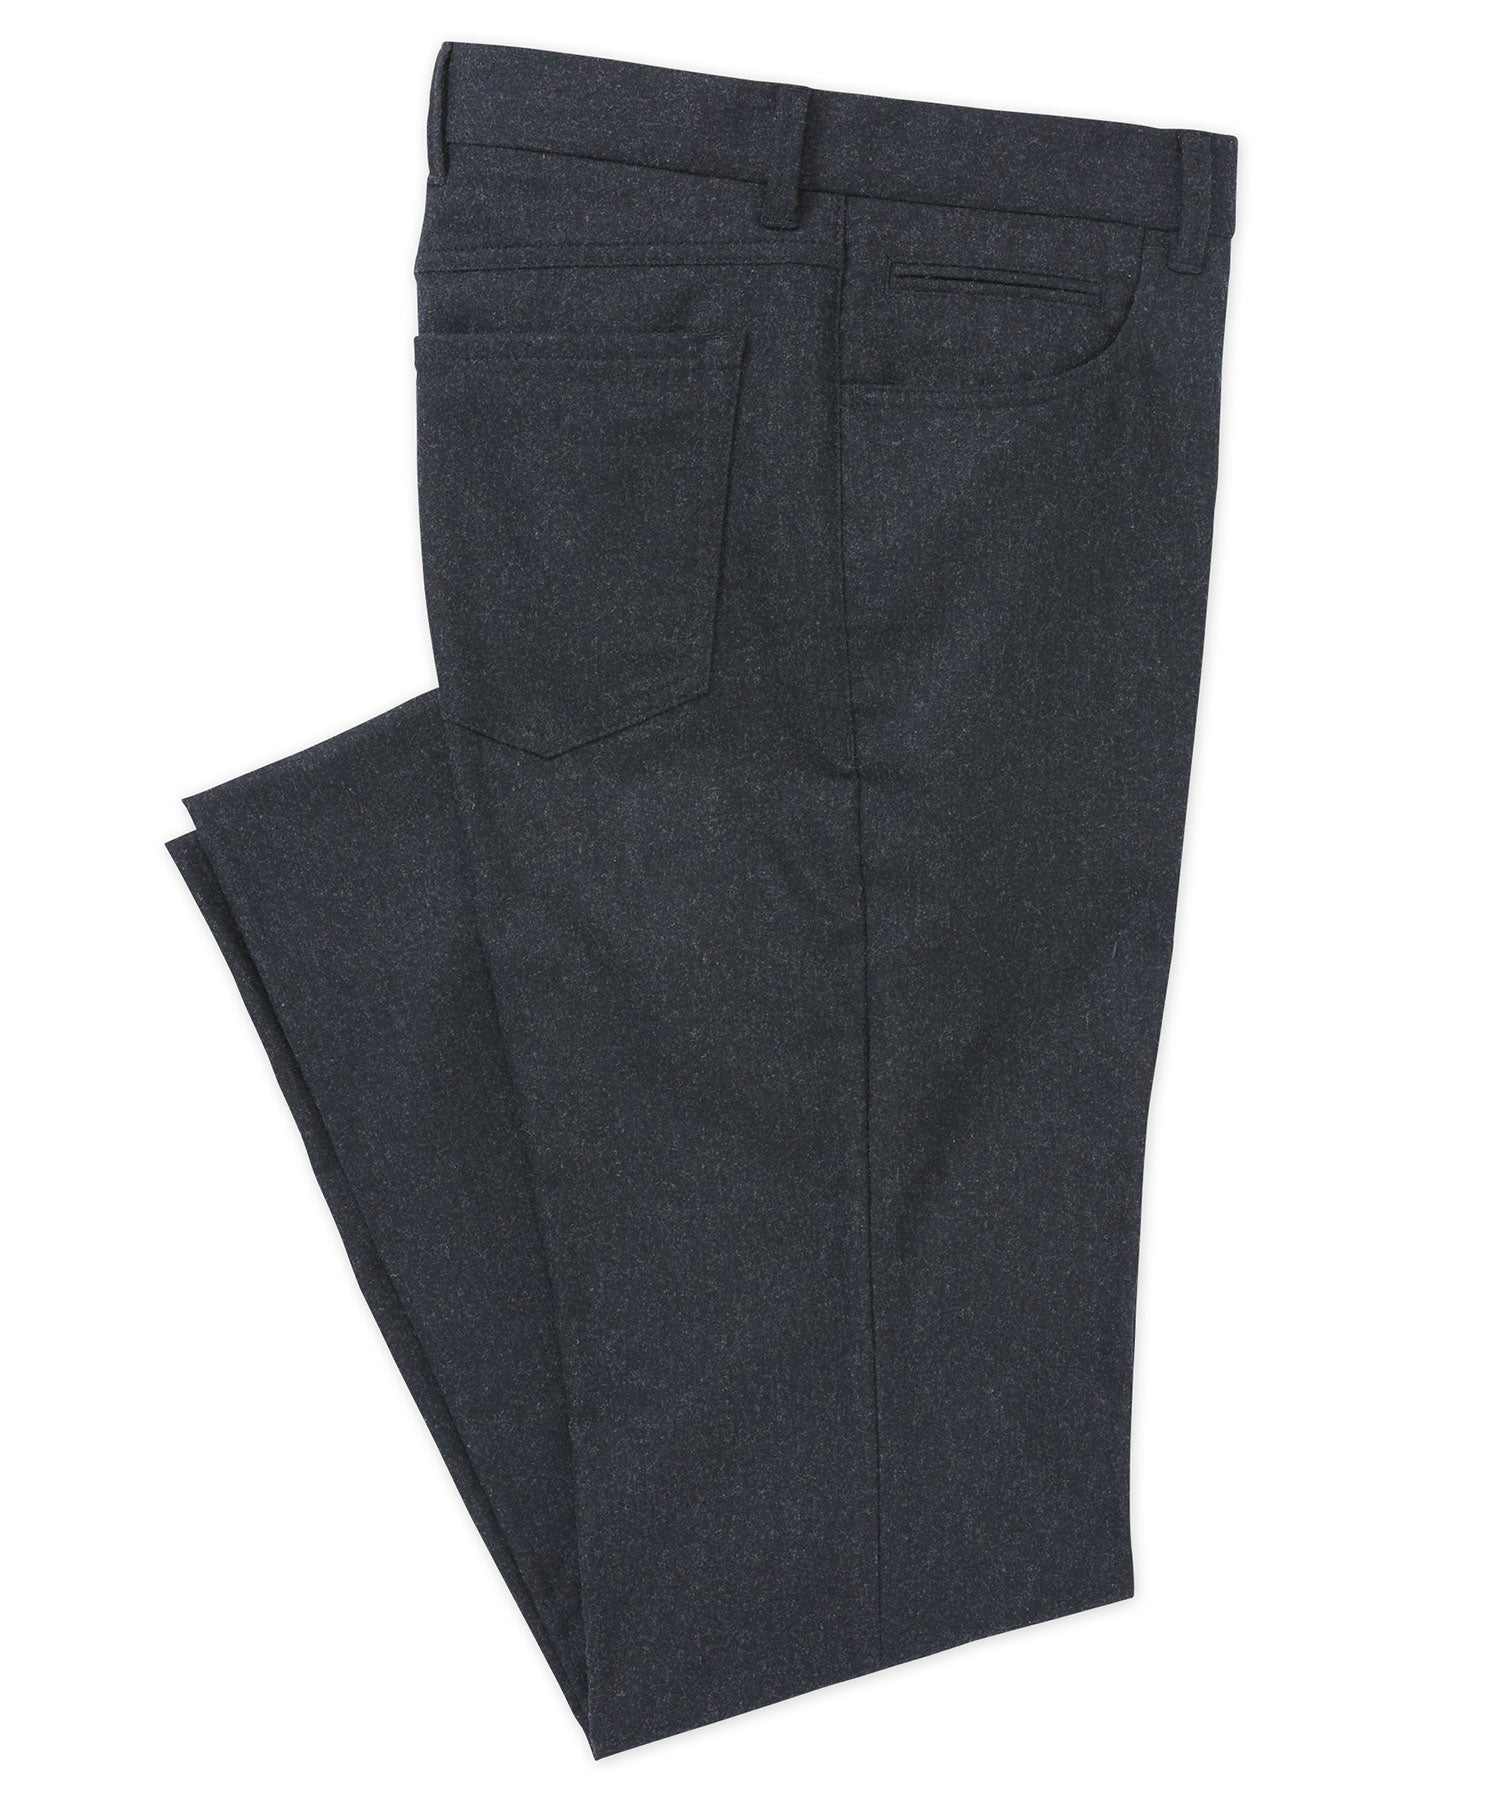 Westport Black Micro Donegal 5-Pocket Pant, Men's Big & Tall